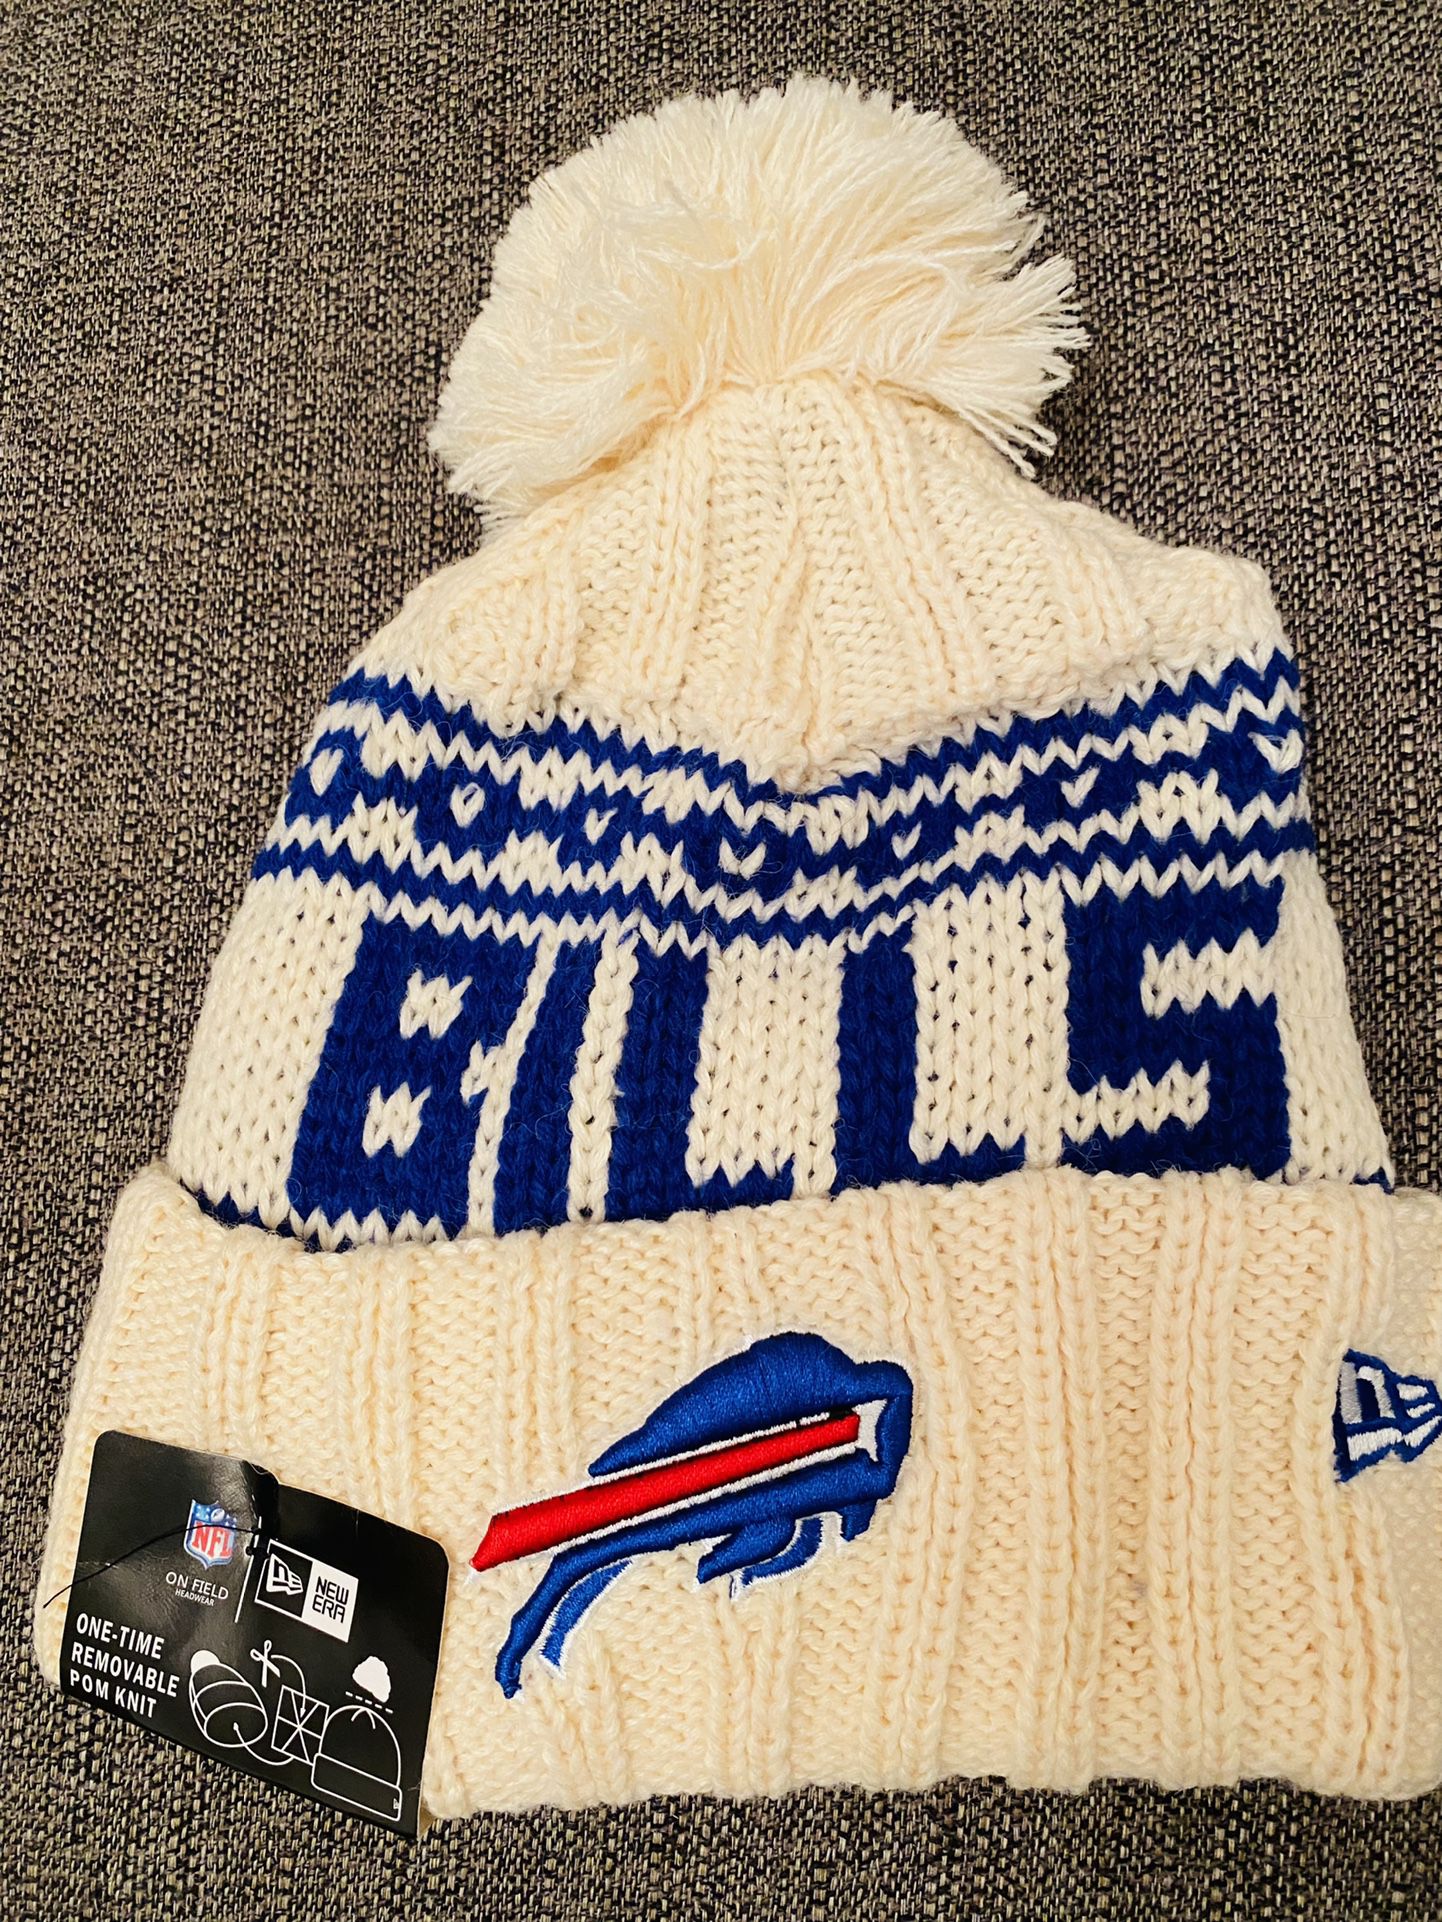 new era bills winter hat